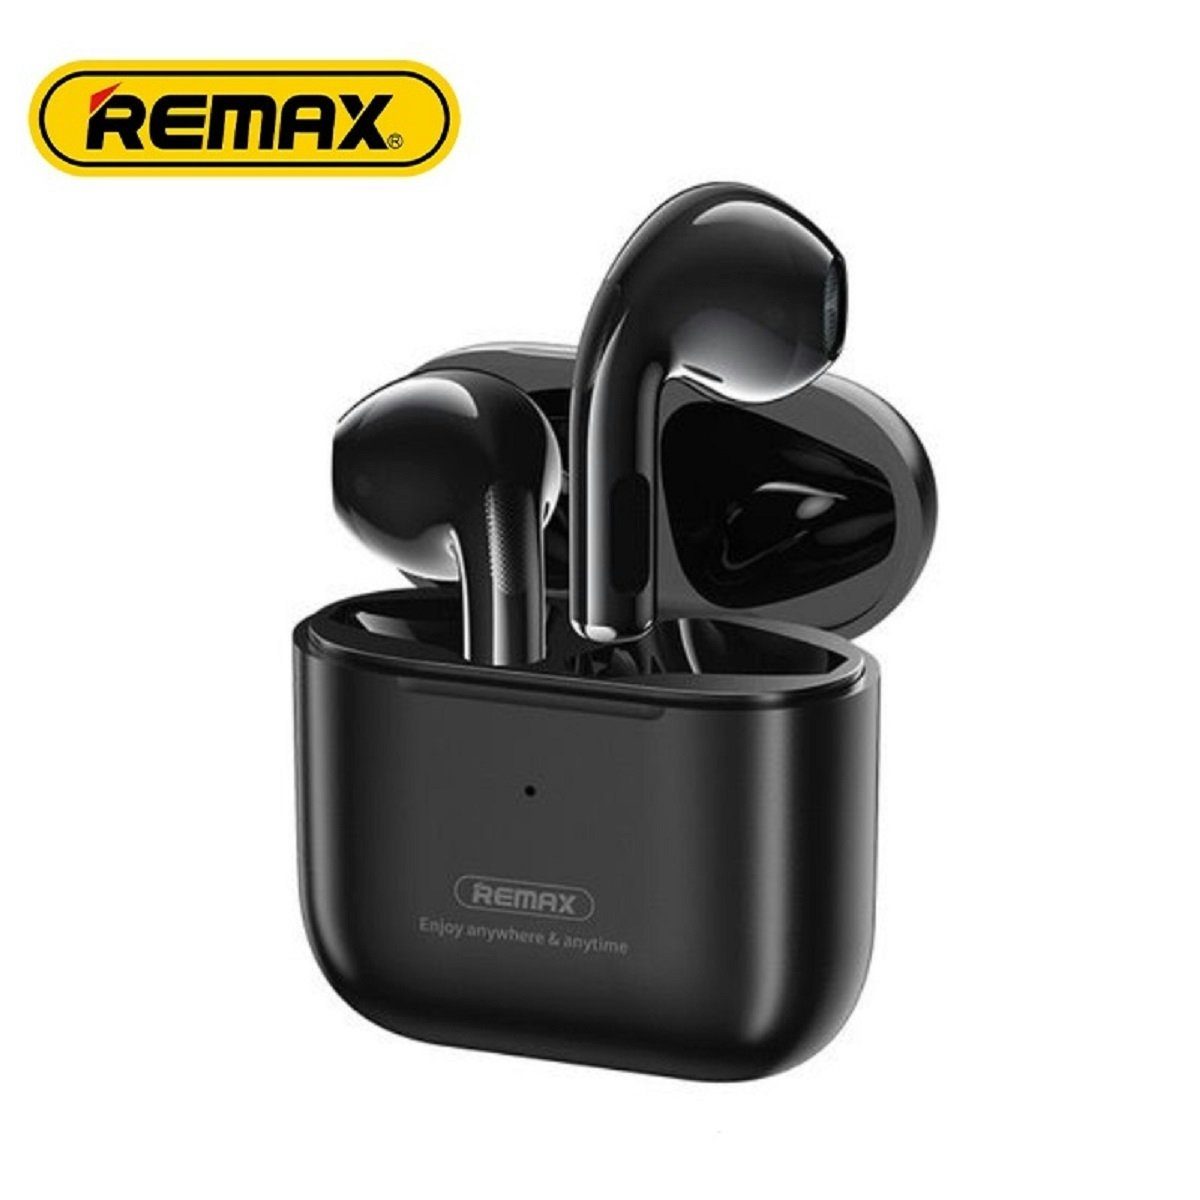 Remax TWS-10i 5.0 Kopfhörer True Wireless mit Ladecase für Smartphone (Weiß) Bluetooth-Kopfhörer (bluetooth, True Wireless, bluetooth, wasserdicht, Aktive Geräuschunterdrückung) Schwarz